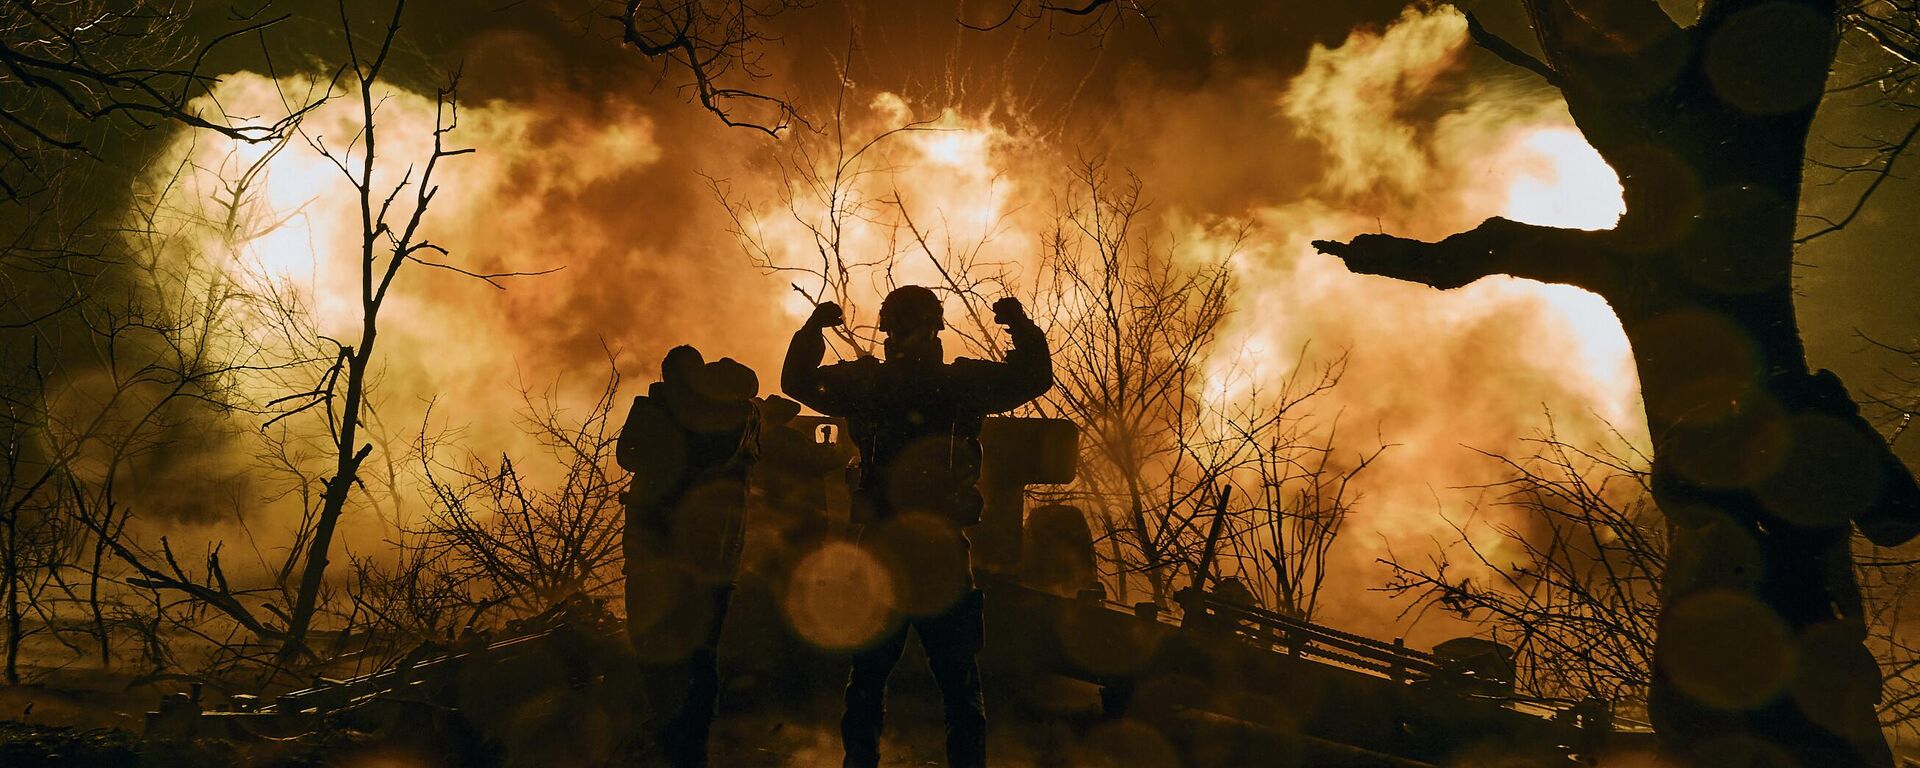  جنود أوكرانيون يطلقون نيران المدفعية على مواقع روسية بالقرب من باخموت في منطقة دونيتسك، 20 نوفمبر 2022.  - سبوتنيك عربي, 1920, 14.03.2023